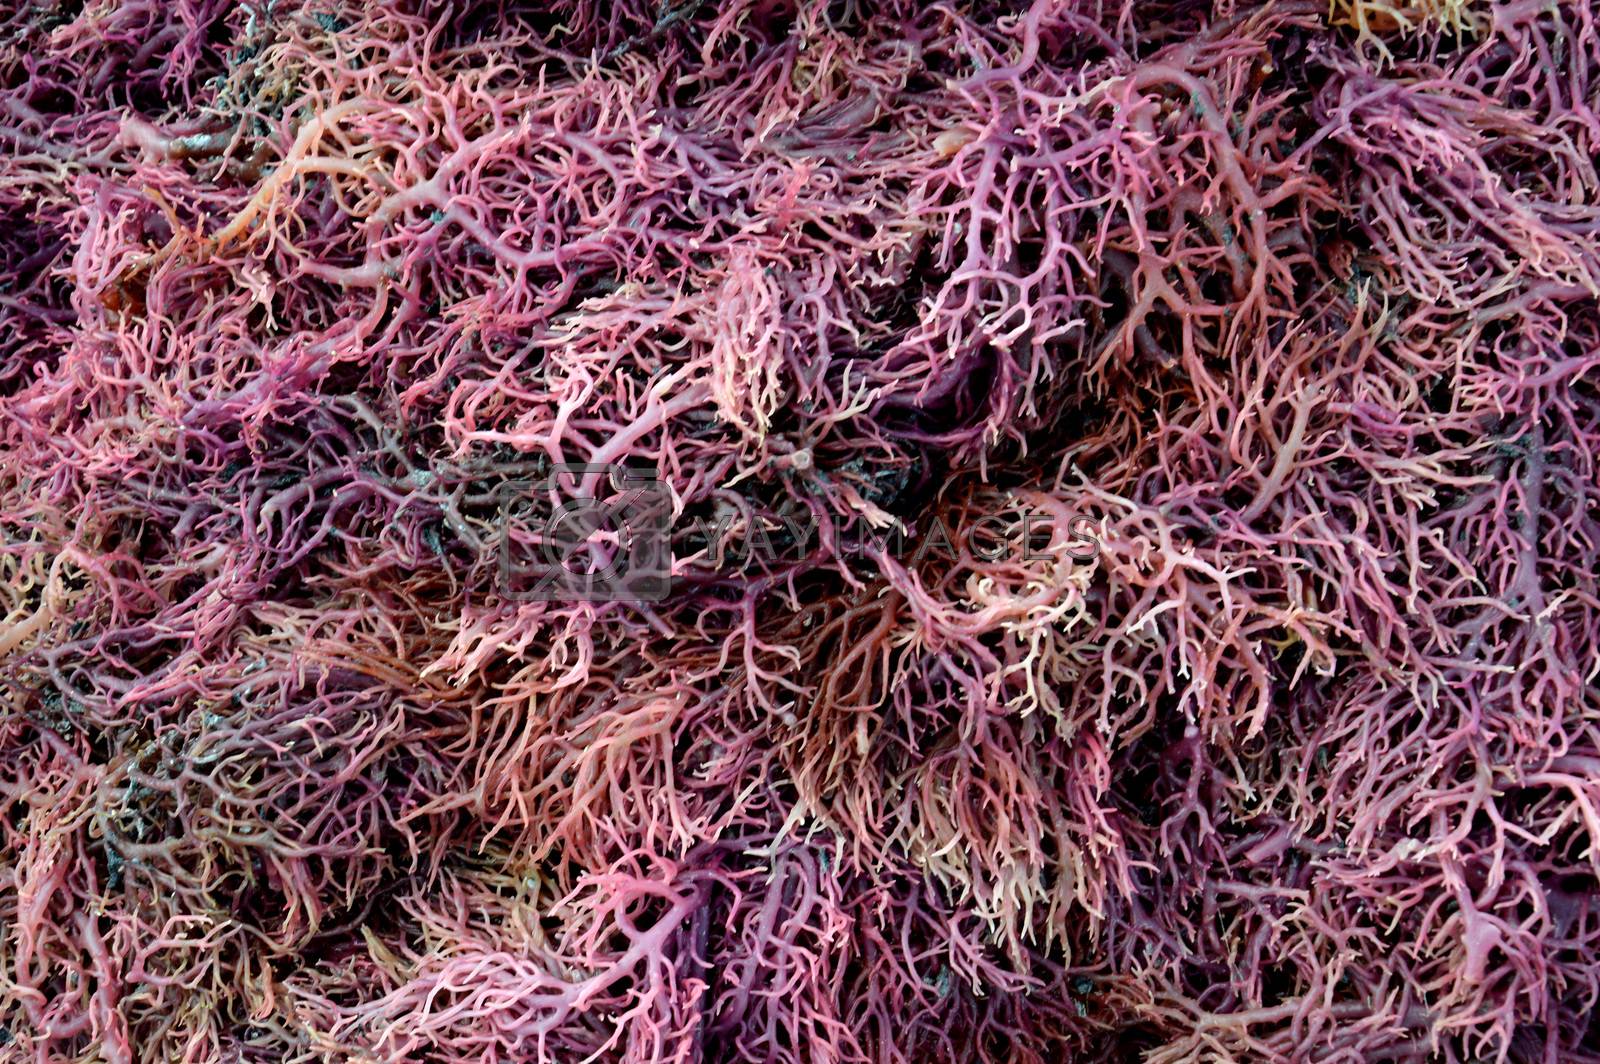 Royalty free image of seaweed  by antonihalim